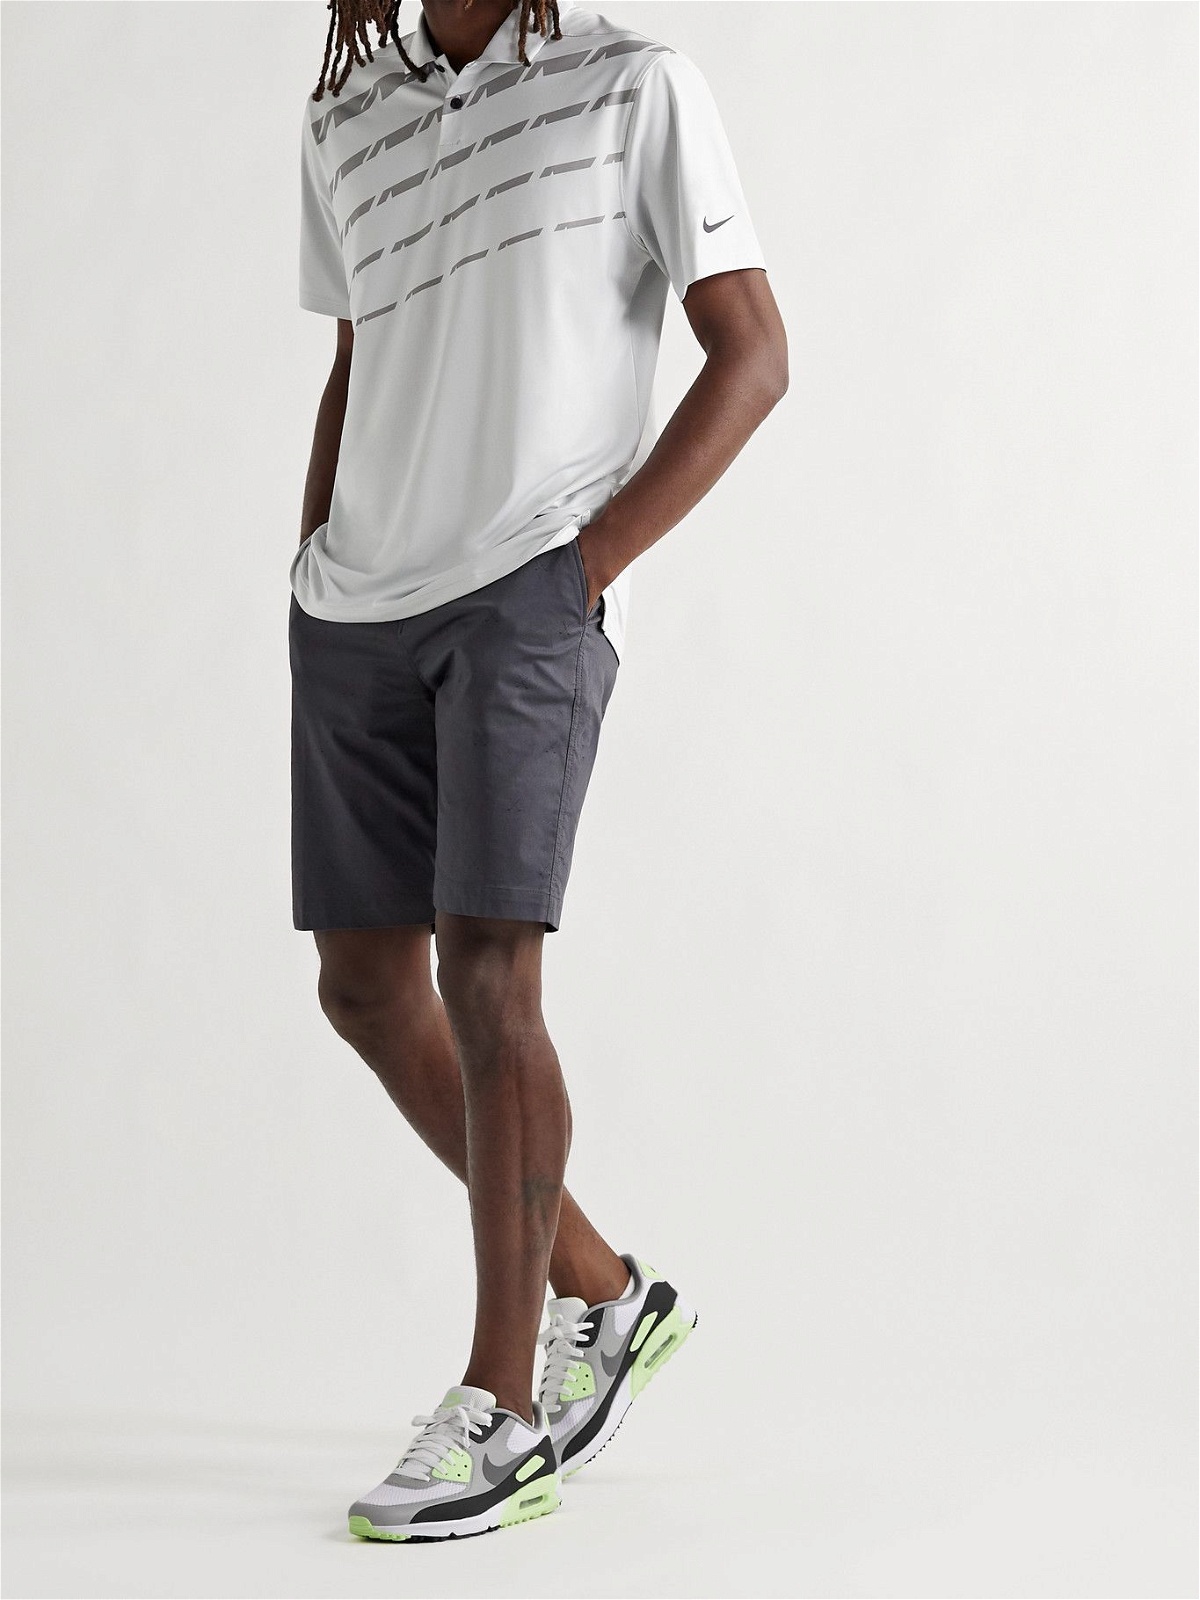 Nike Golf - Air Max 90 G Coated-Mesh Golf Shoes - White Nike Golf